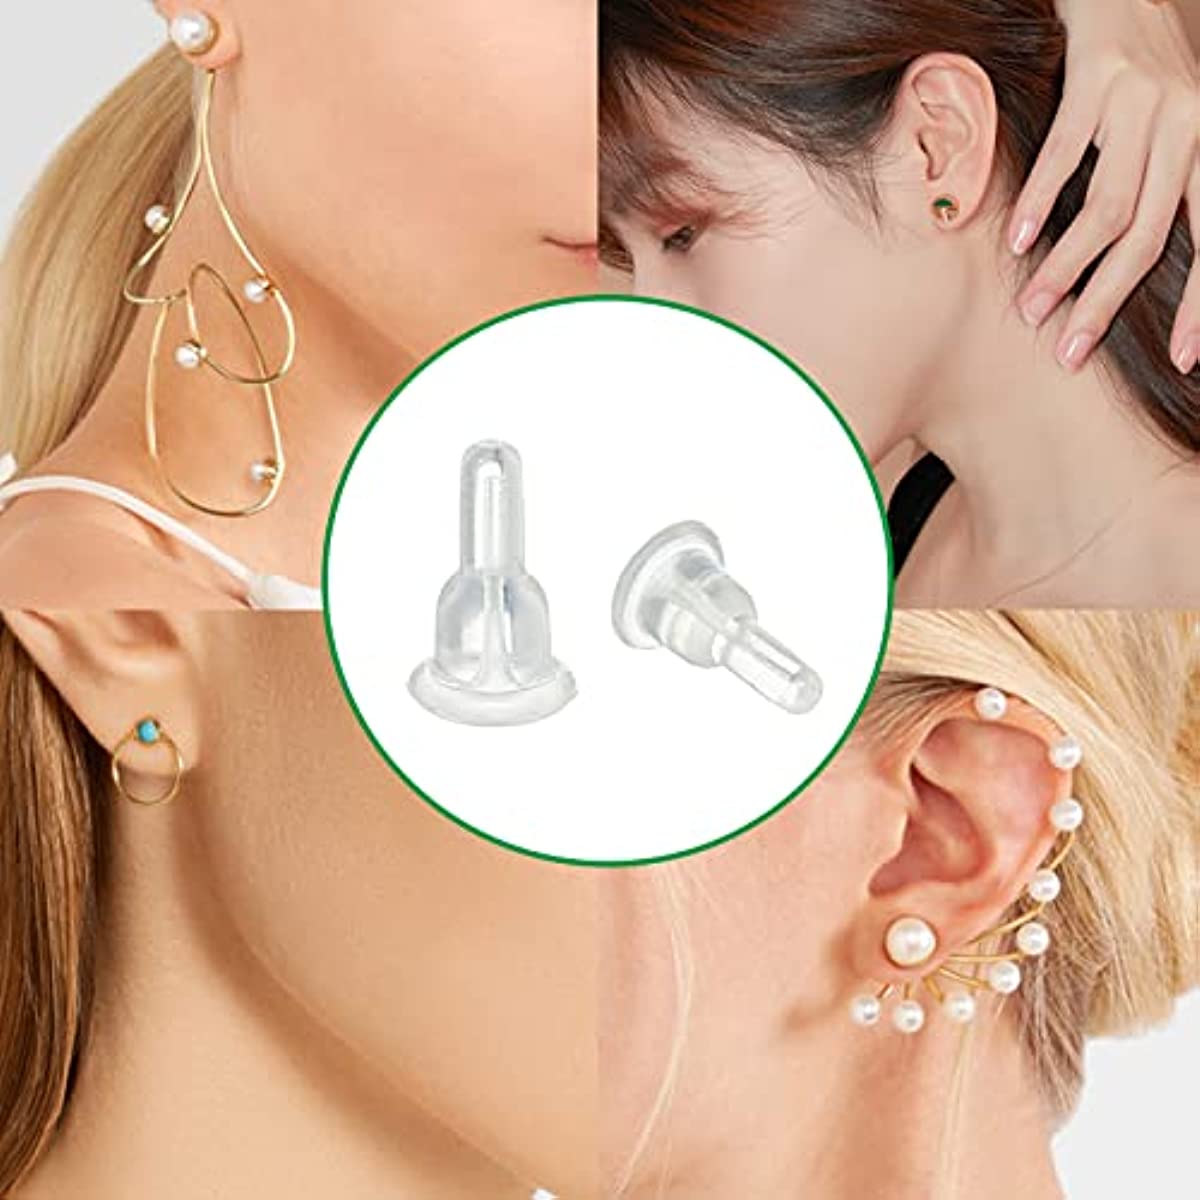 Plastic earring backs for stud earrings - 50pcs pack